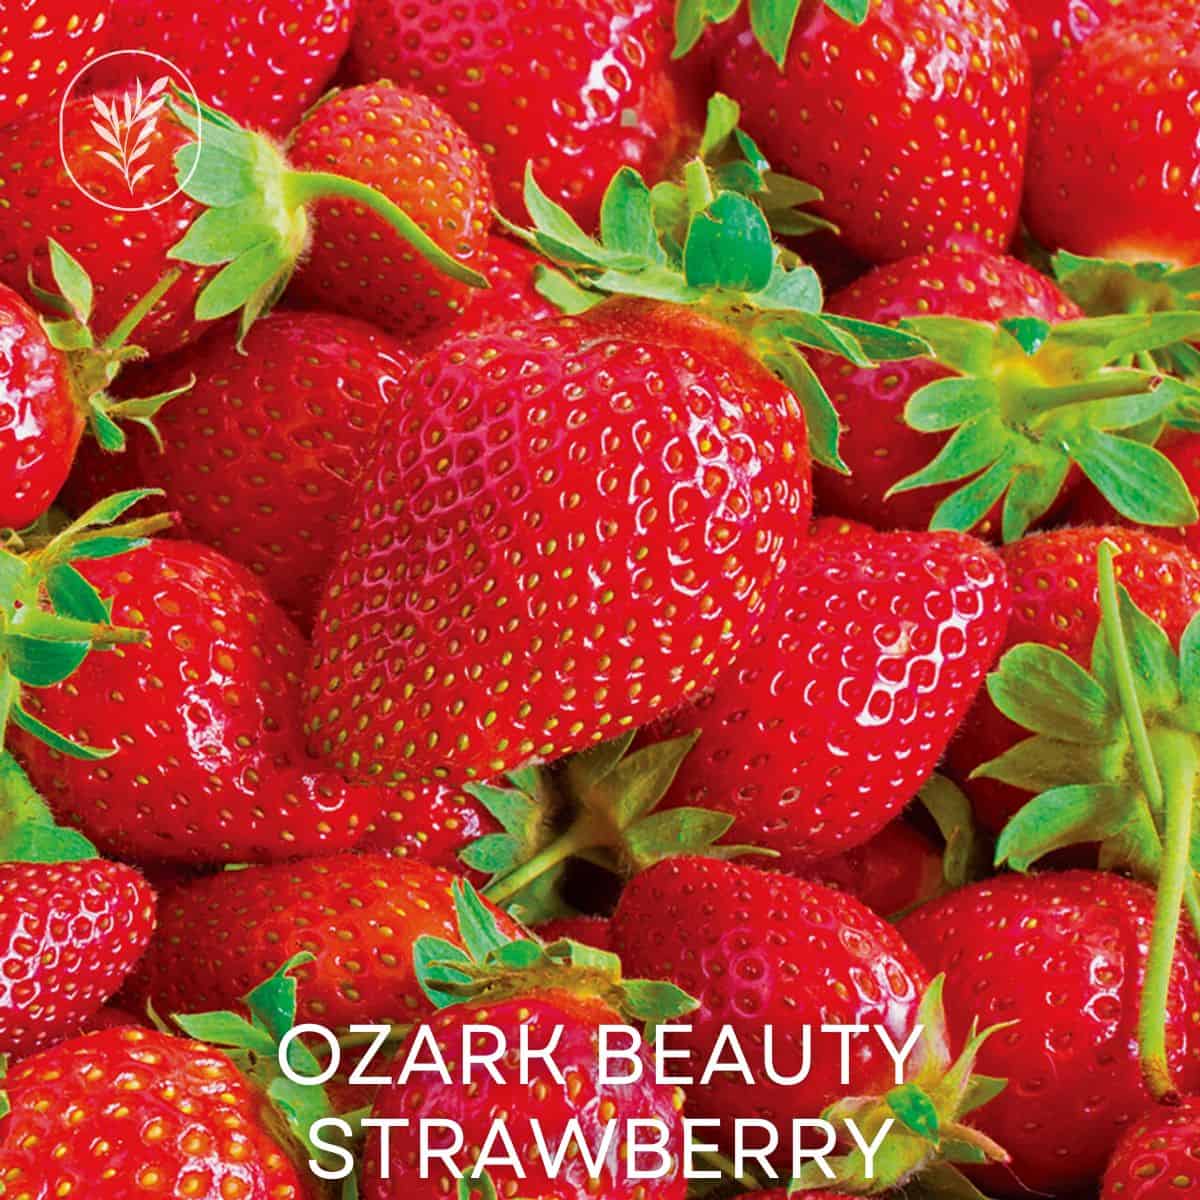 Ozark beauty strawberry via @home4theharvest